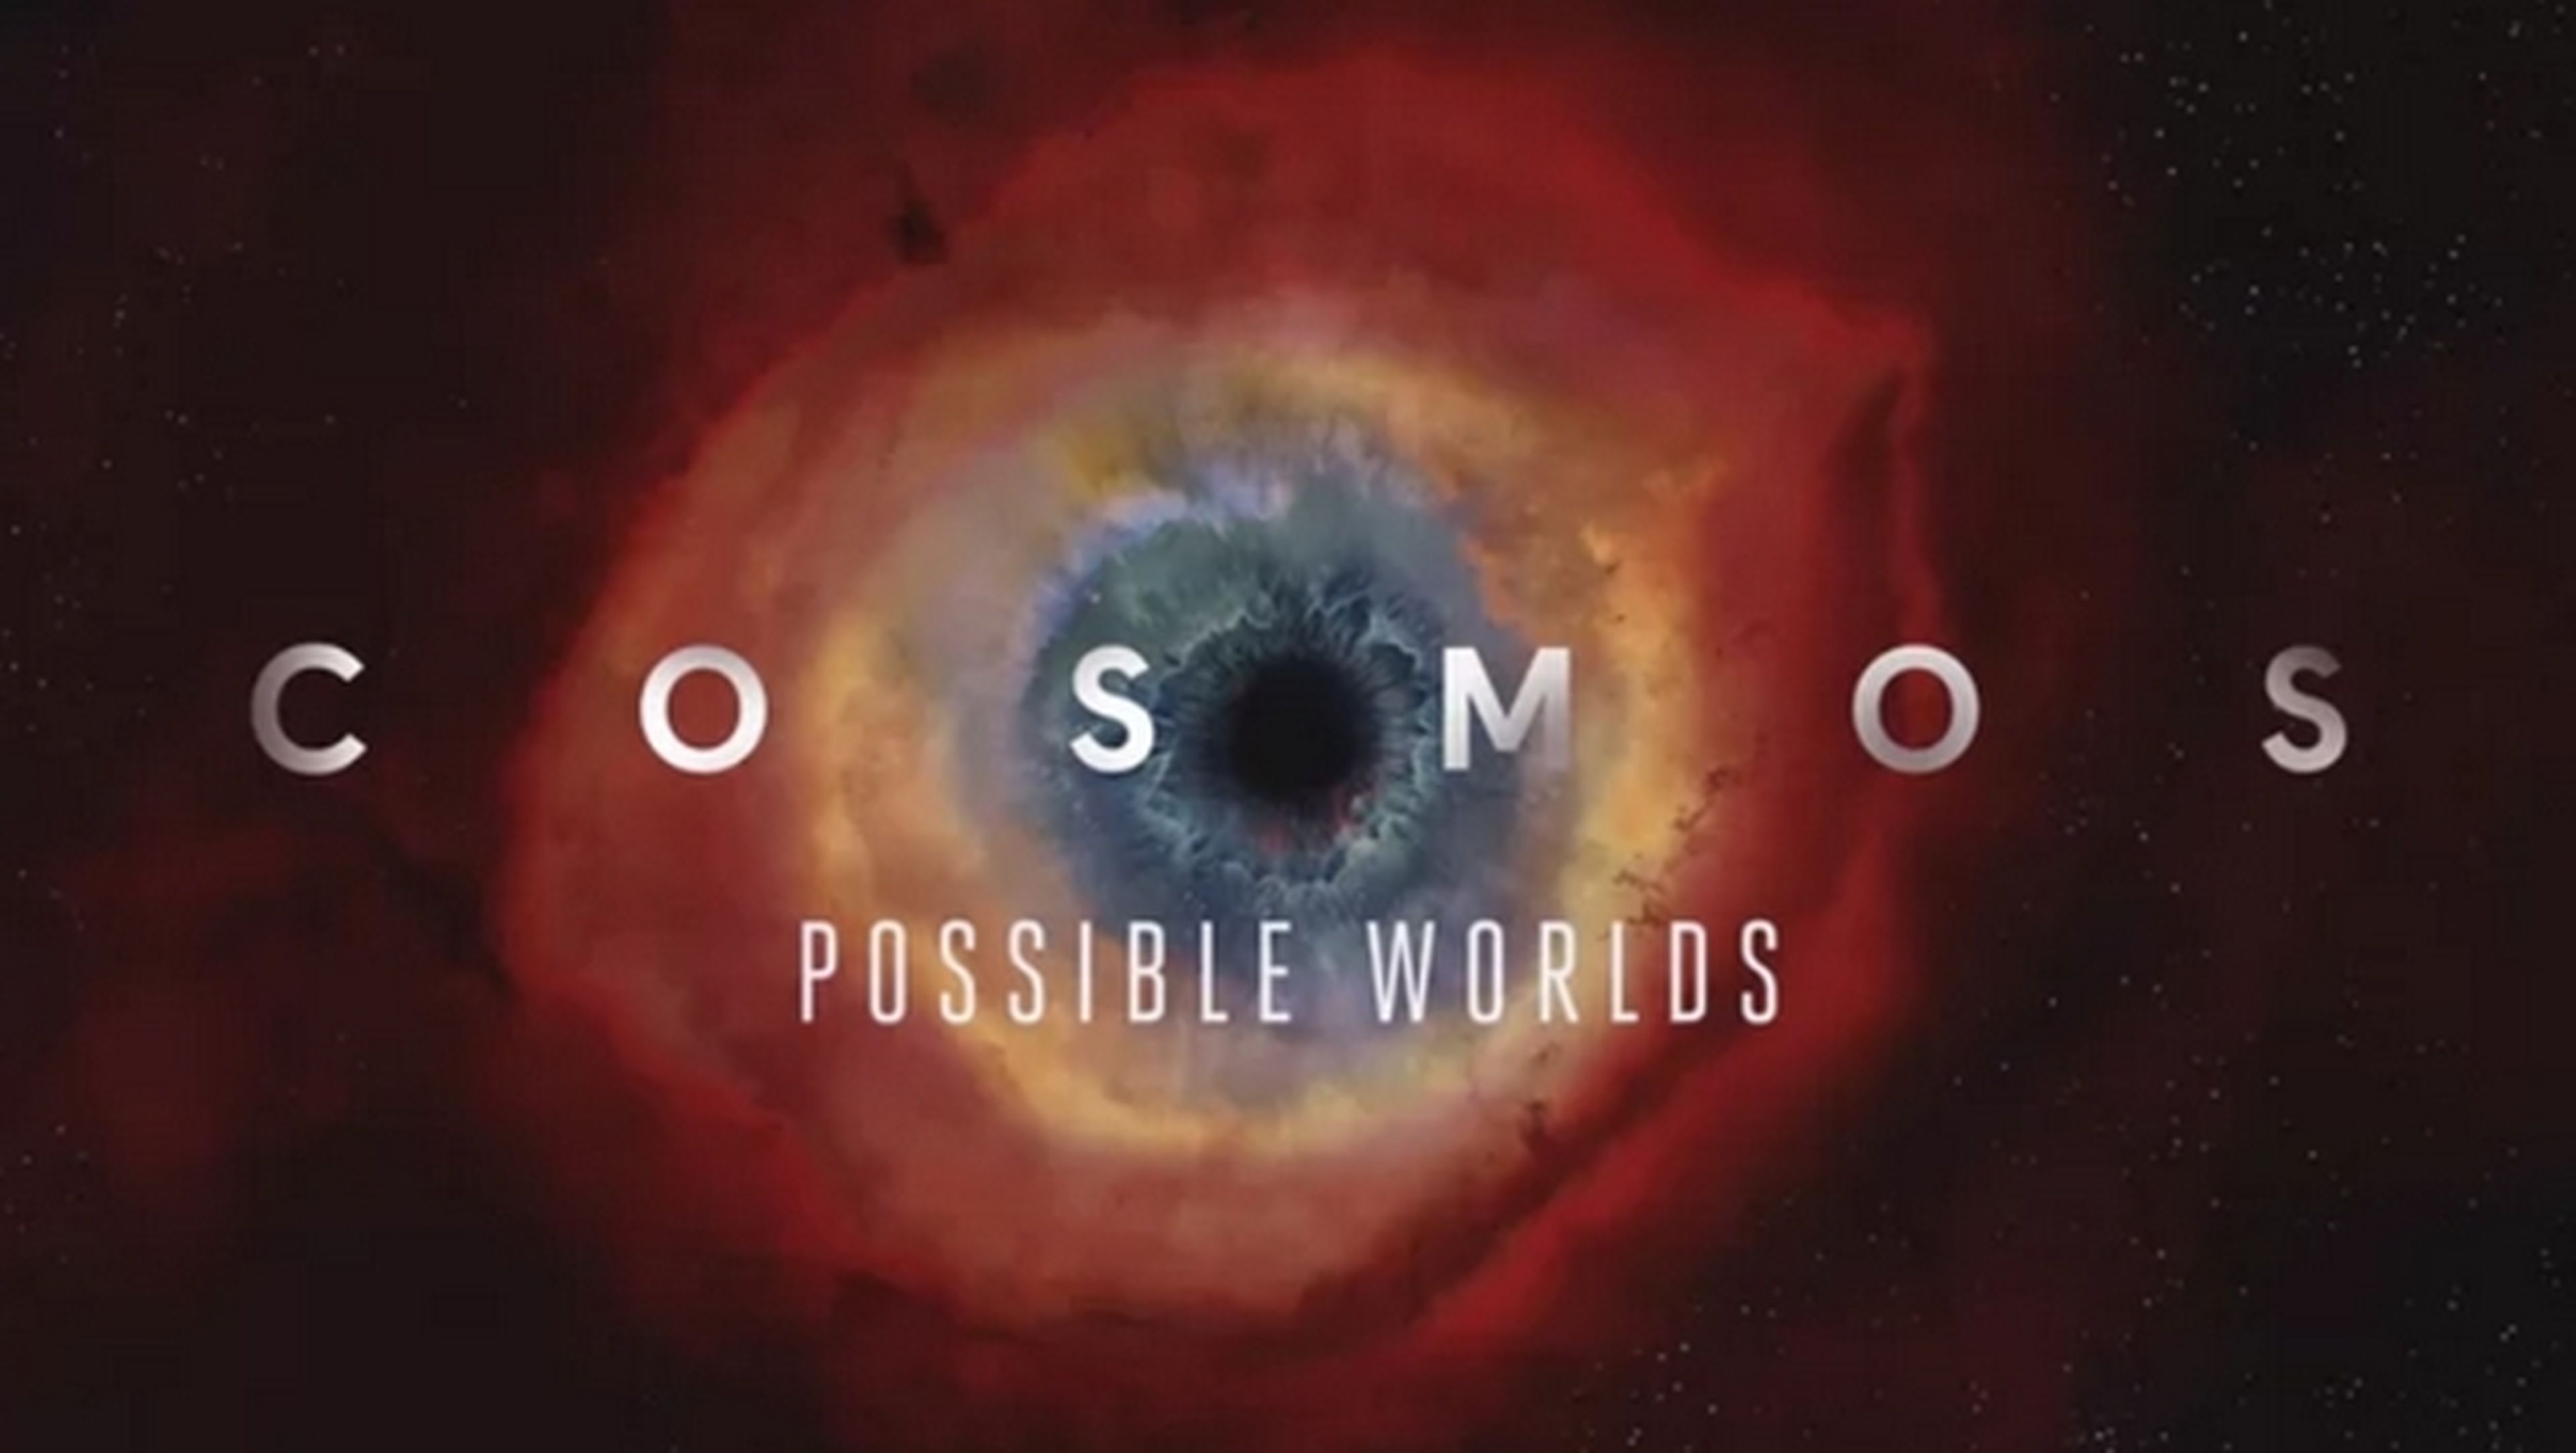 La segunda temporada de Cosmos tiene fecha de estreno